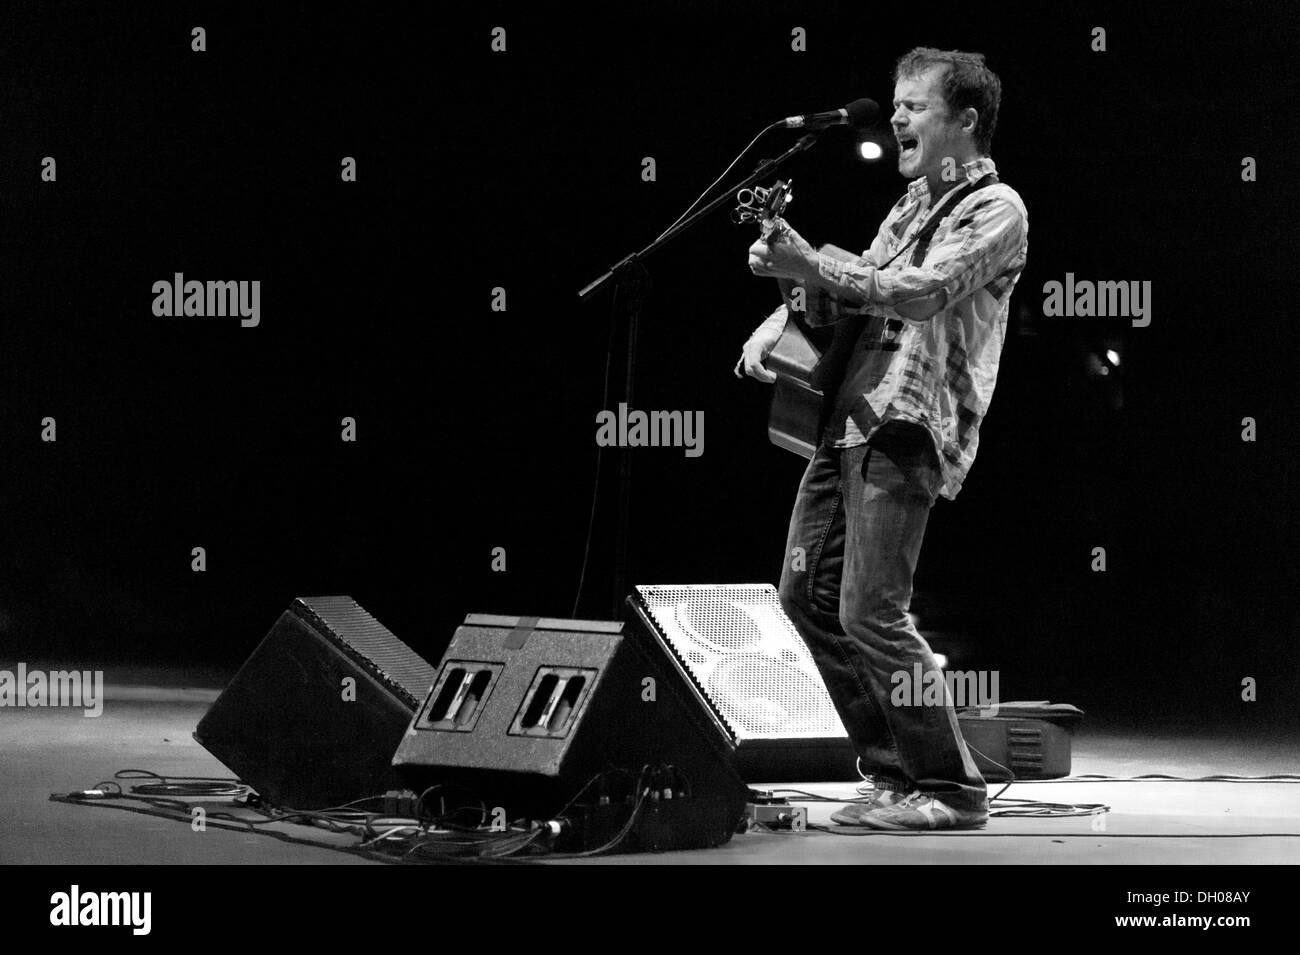 Canzone irlandese-writer Damien Rice esegue presso Auditorium Parco della Musica di Roma (SI) 2012 Foto Stock